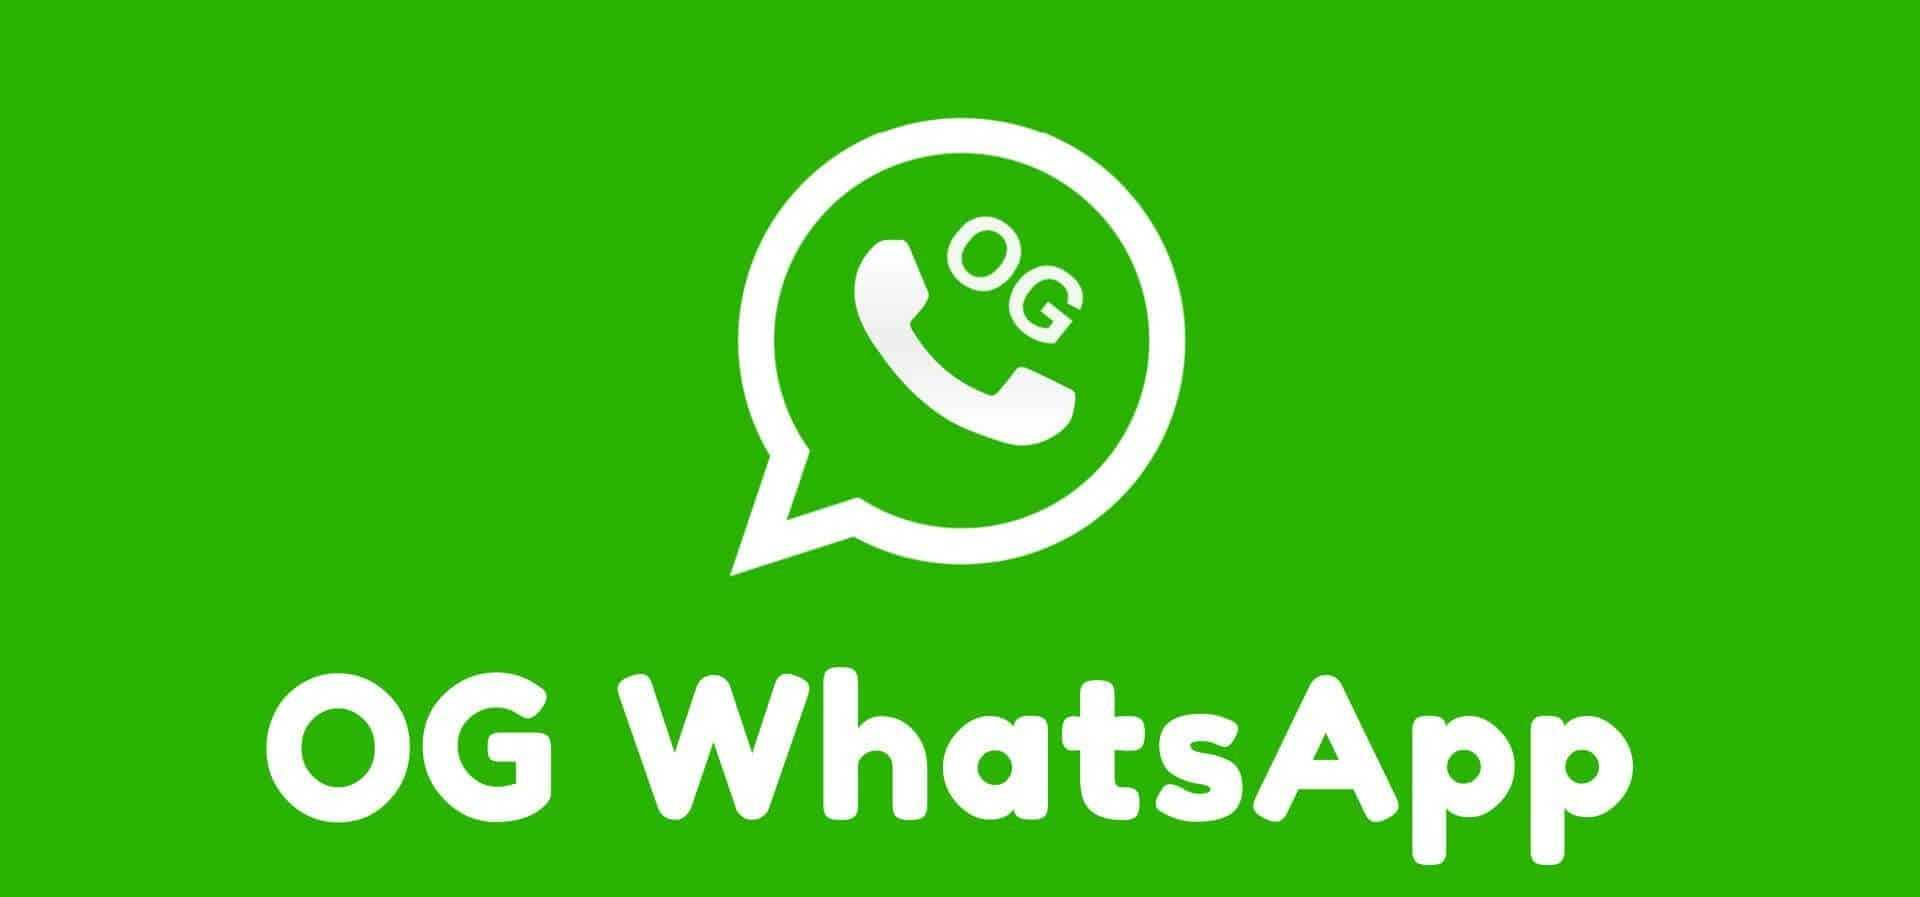 Звонки через whatsapp: как пользоваться функцией